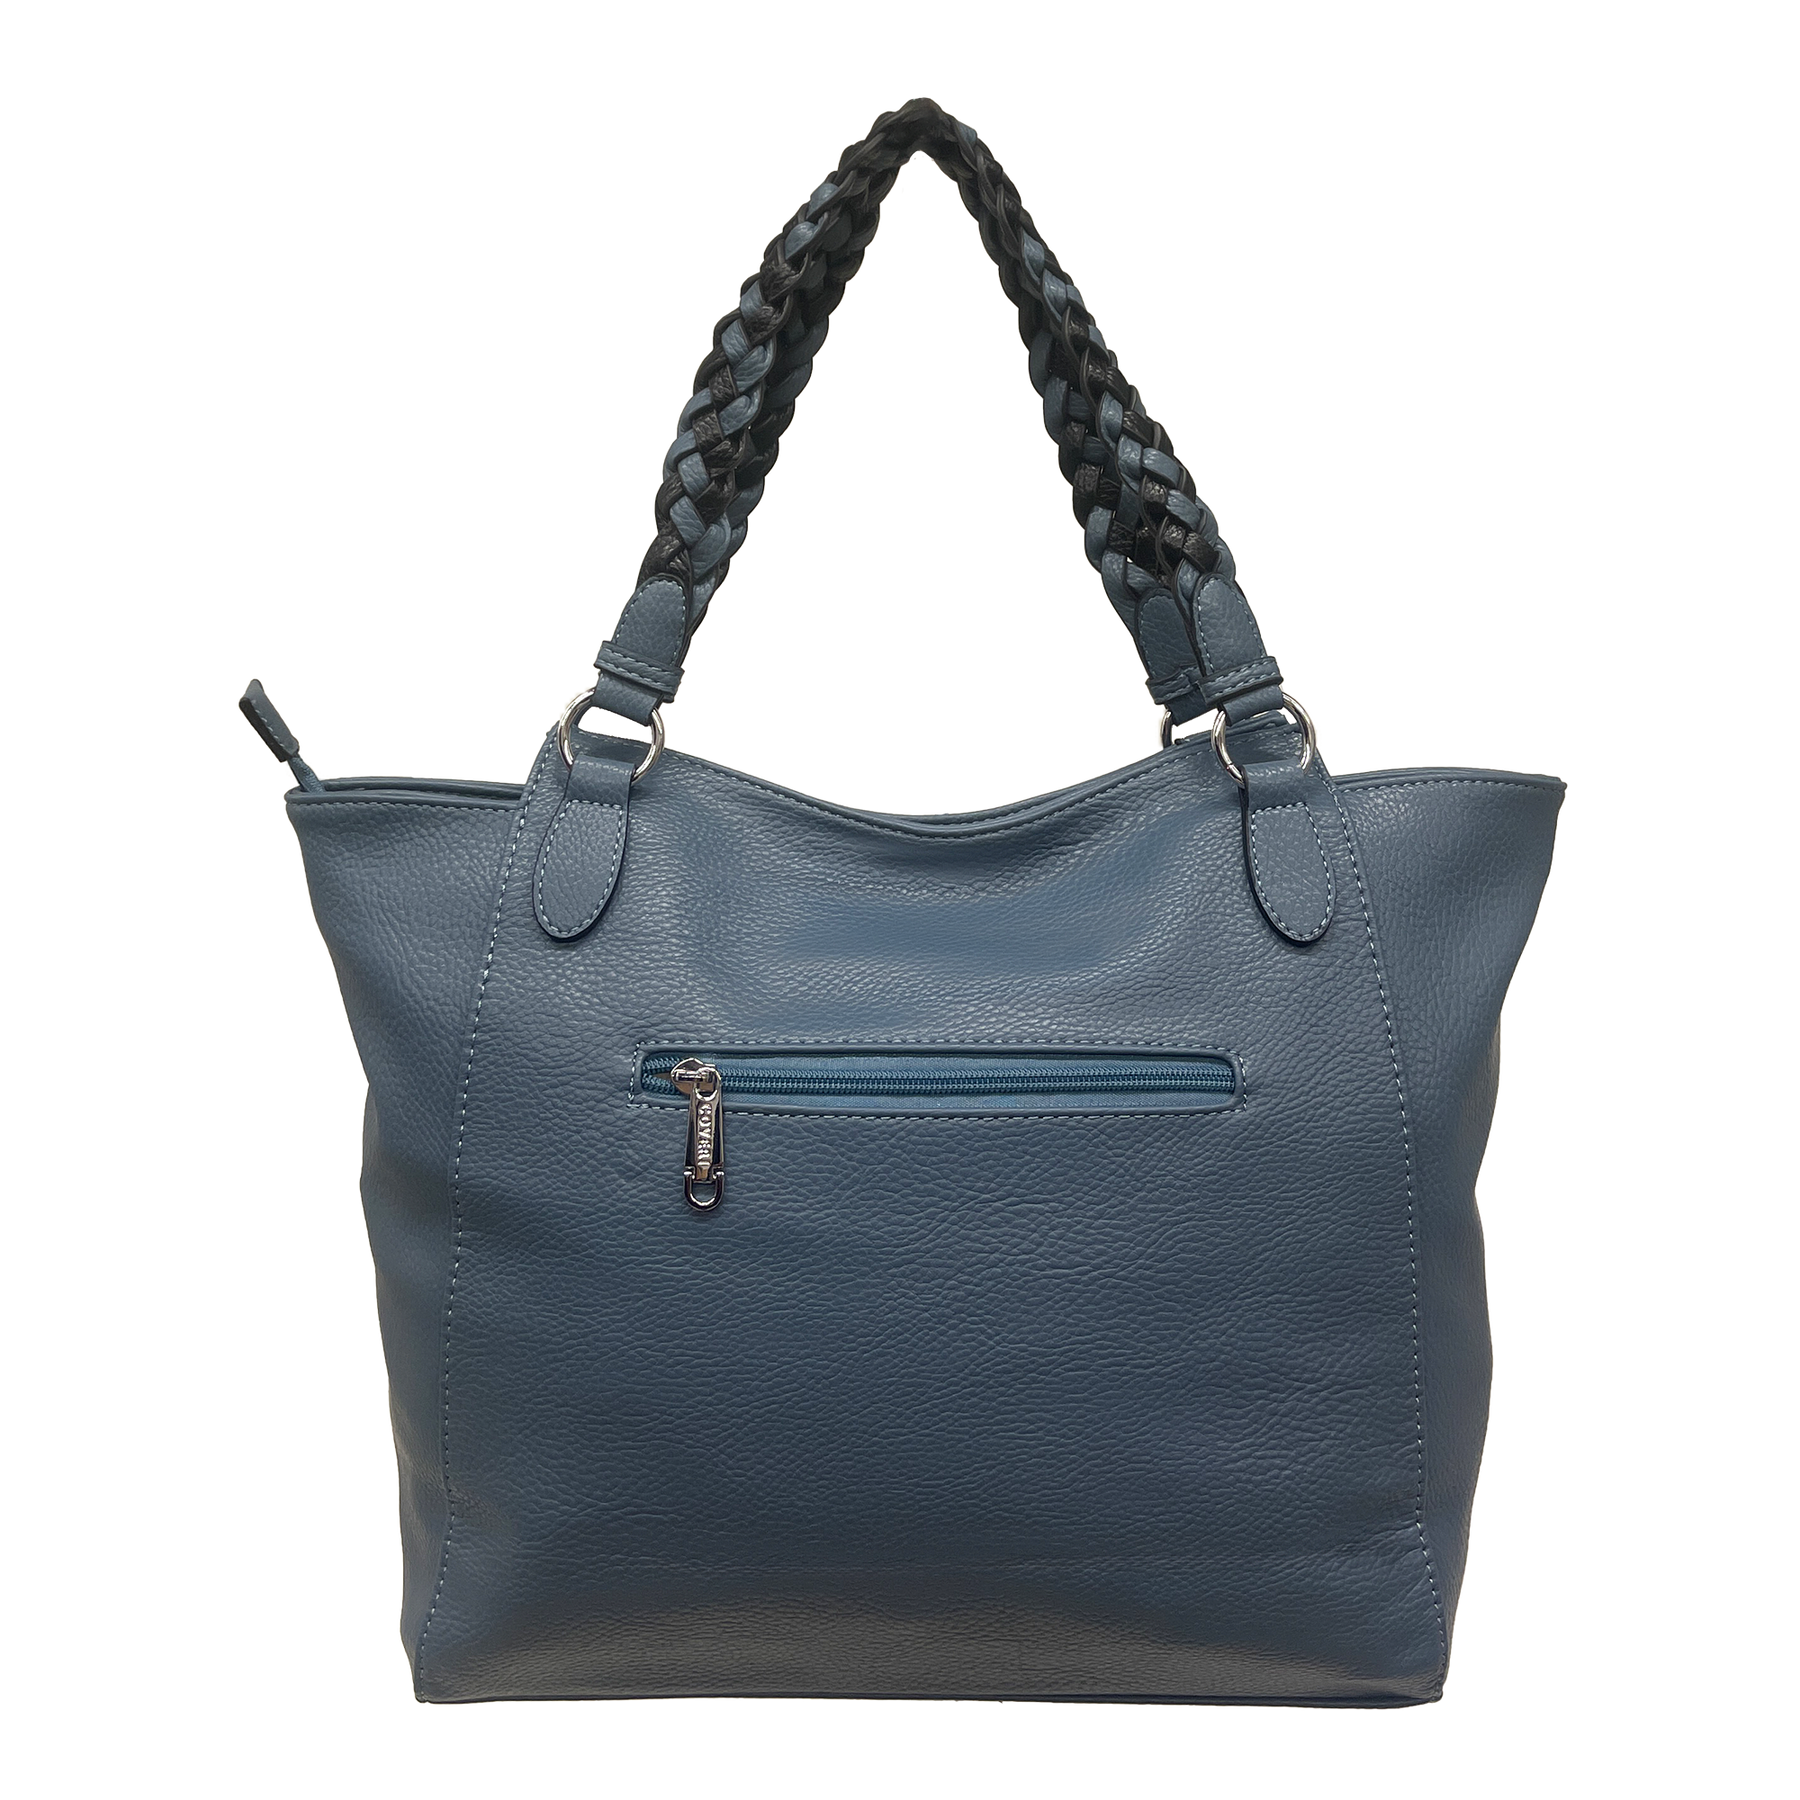 Coveri Collection - Chic Nautica: Einkaufstasche mit Nappereien und miteinander verflochtenen Details